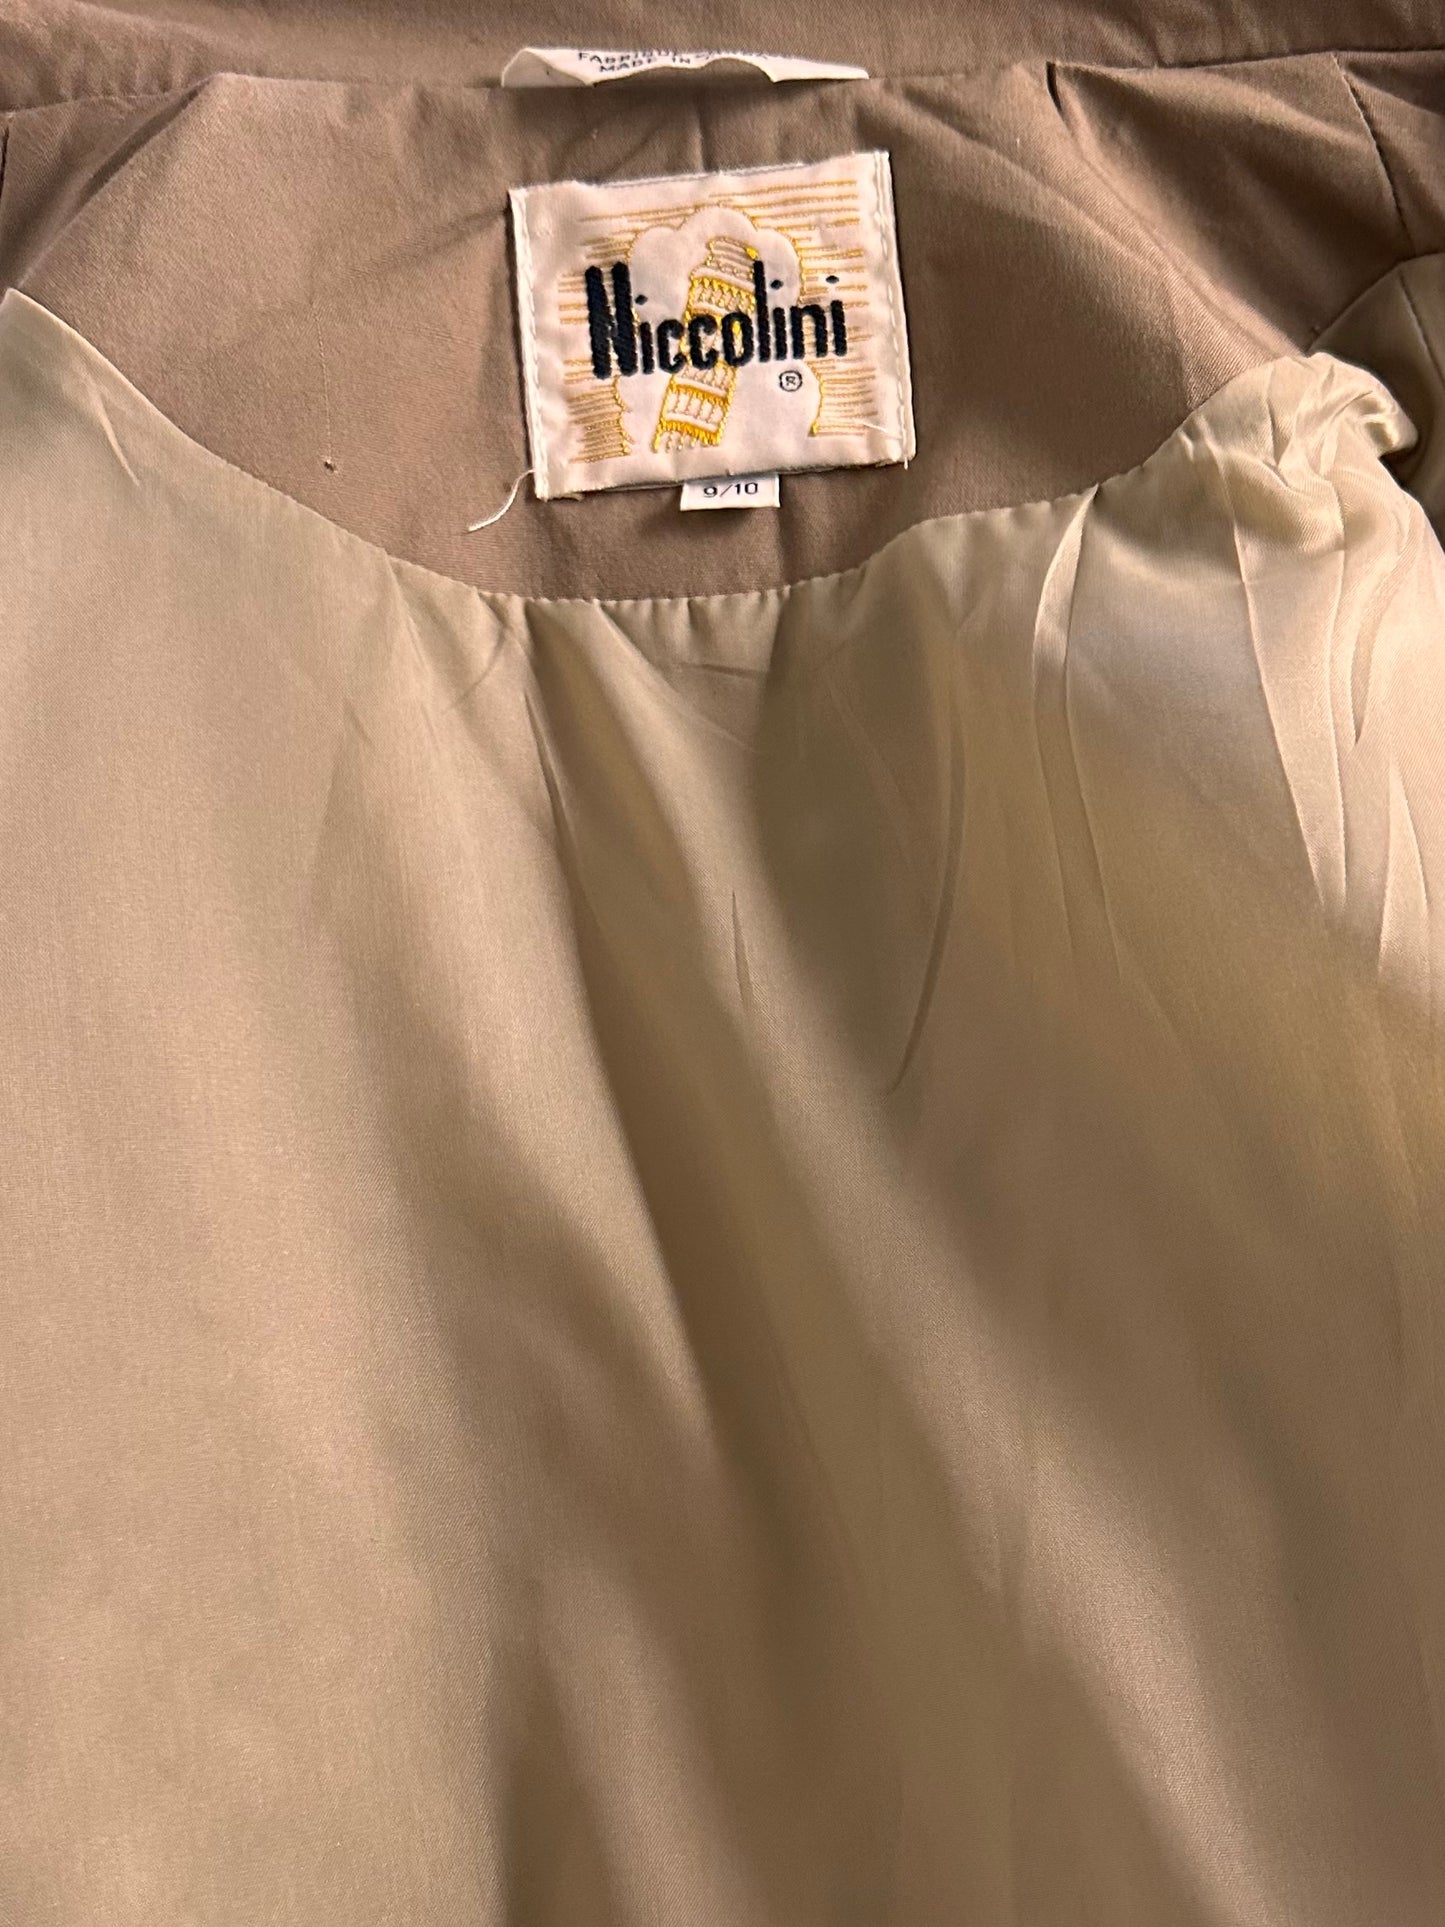 90s 'Niccolini' Trench Coat / Medium